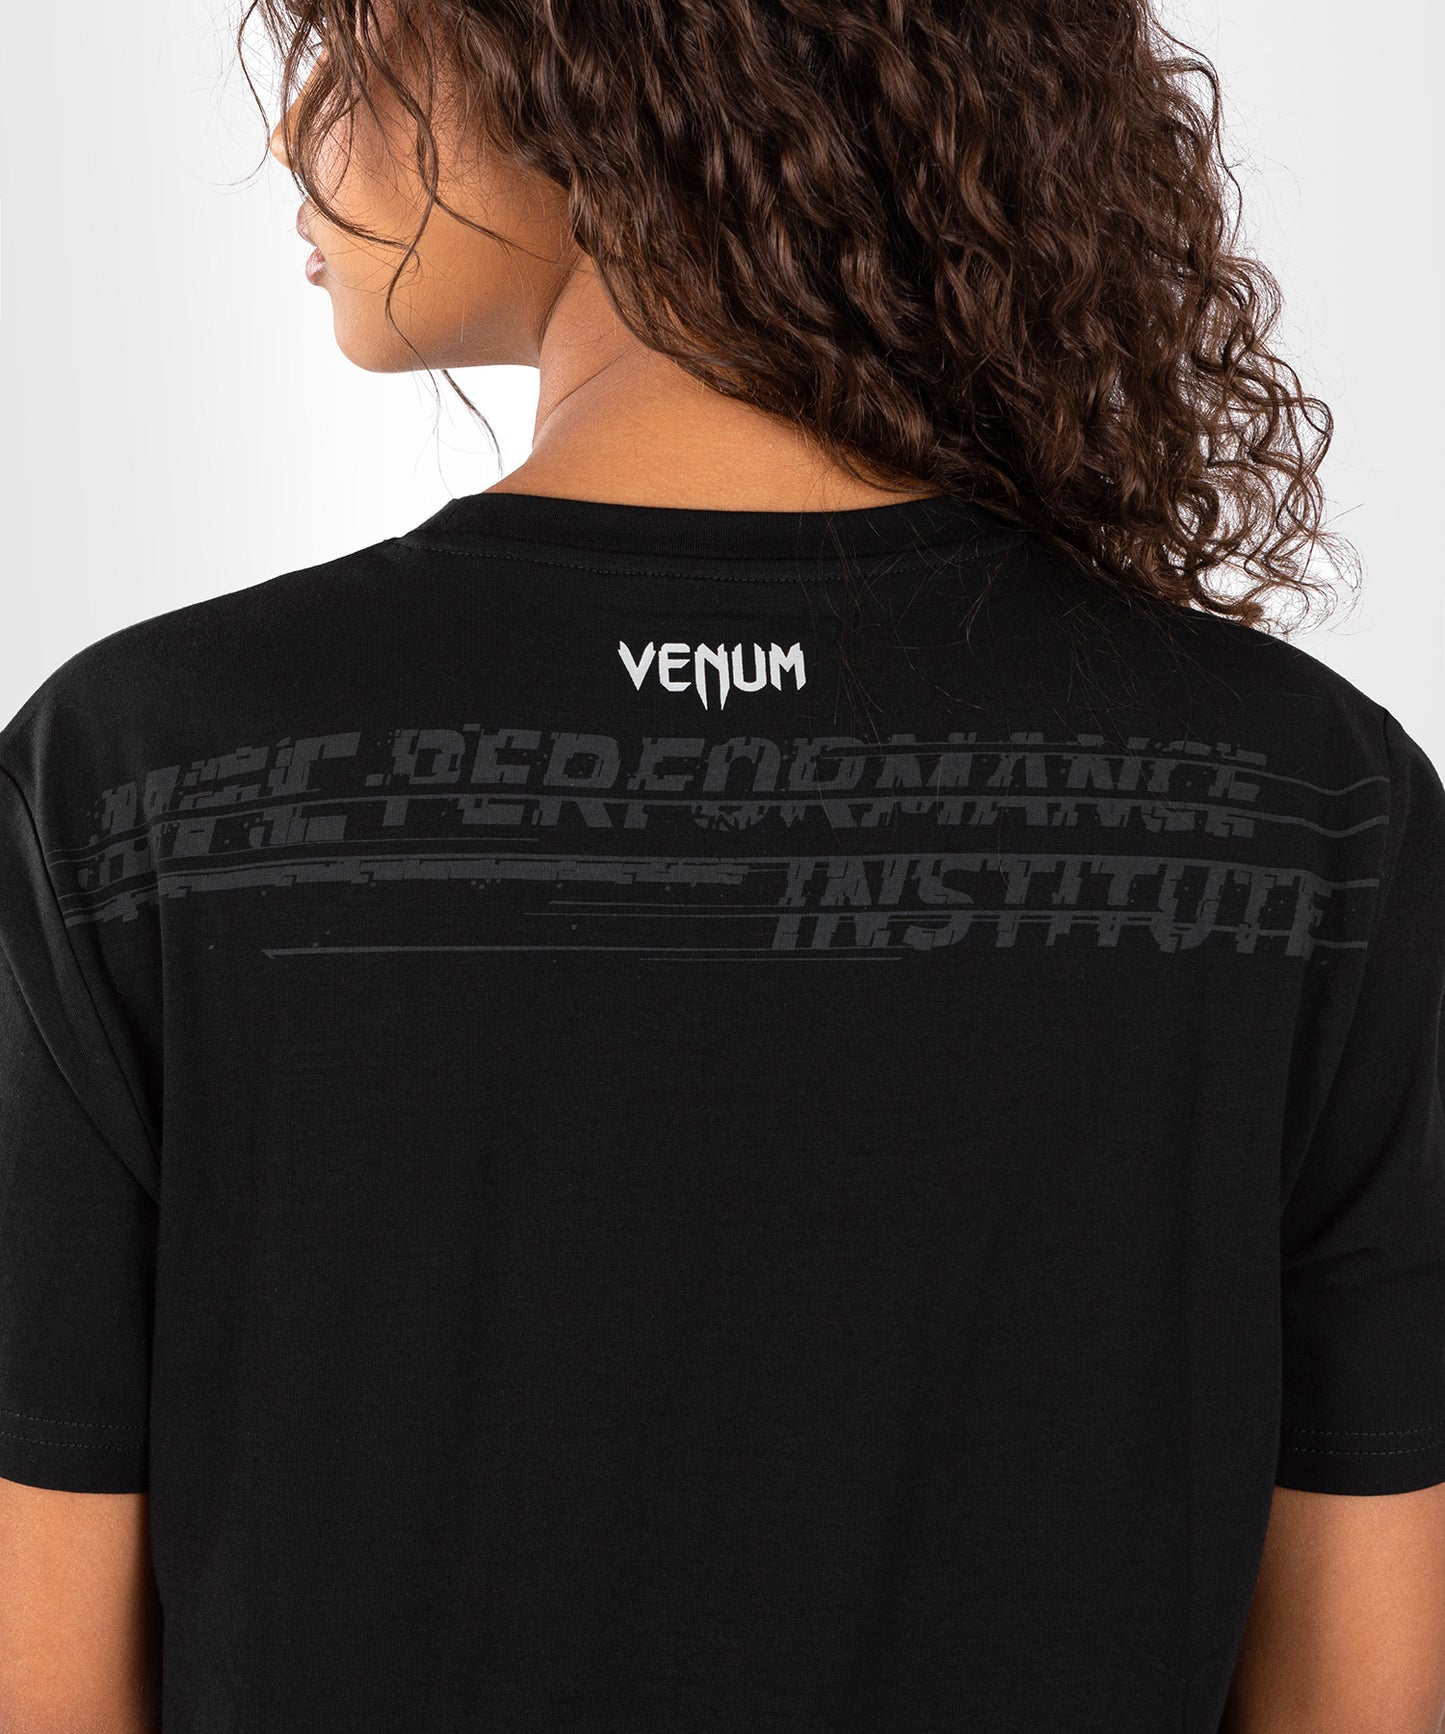 UFC Venum Performance Institute 2.0 Camiseta para Hombre - Negra/Roja